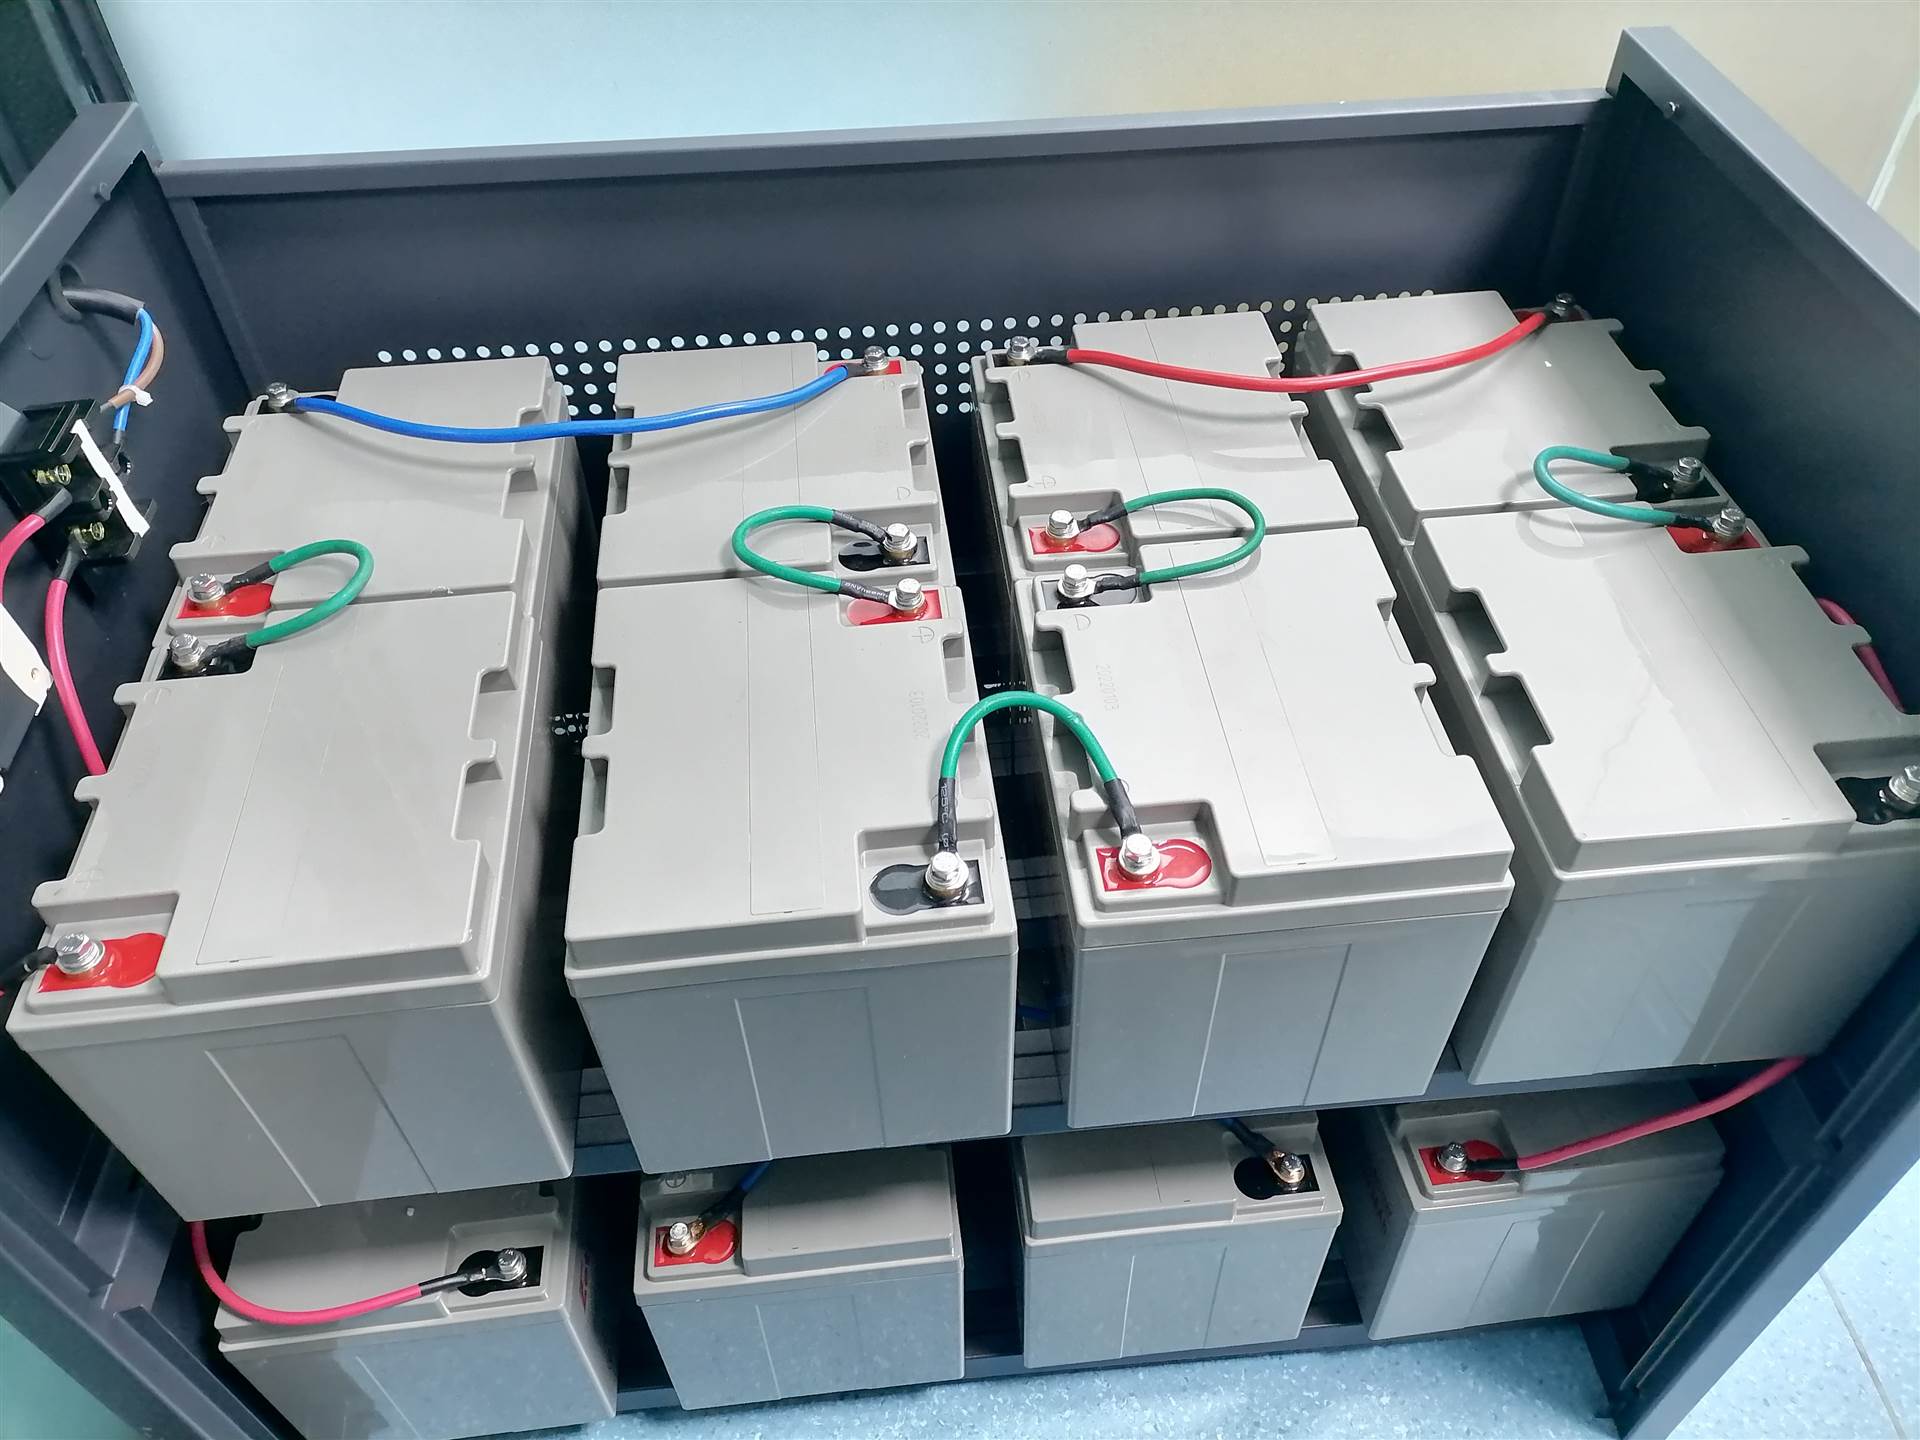 深圳南山区回收报废电池-山特ups电池回收公司